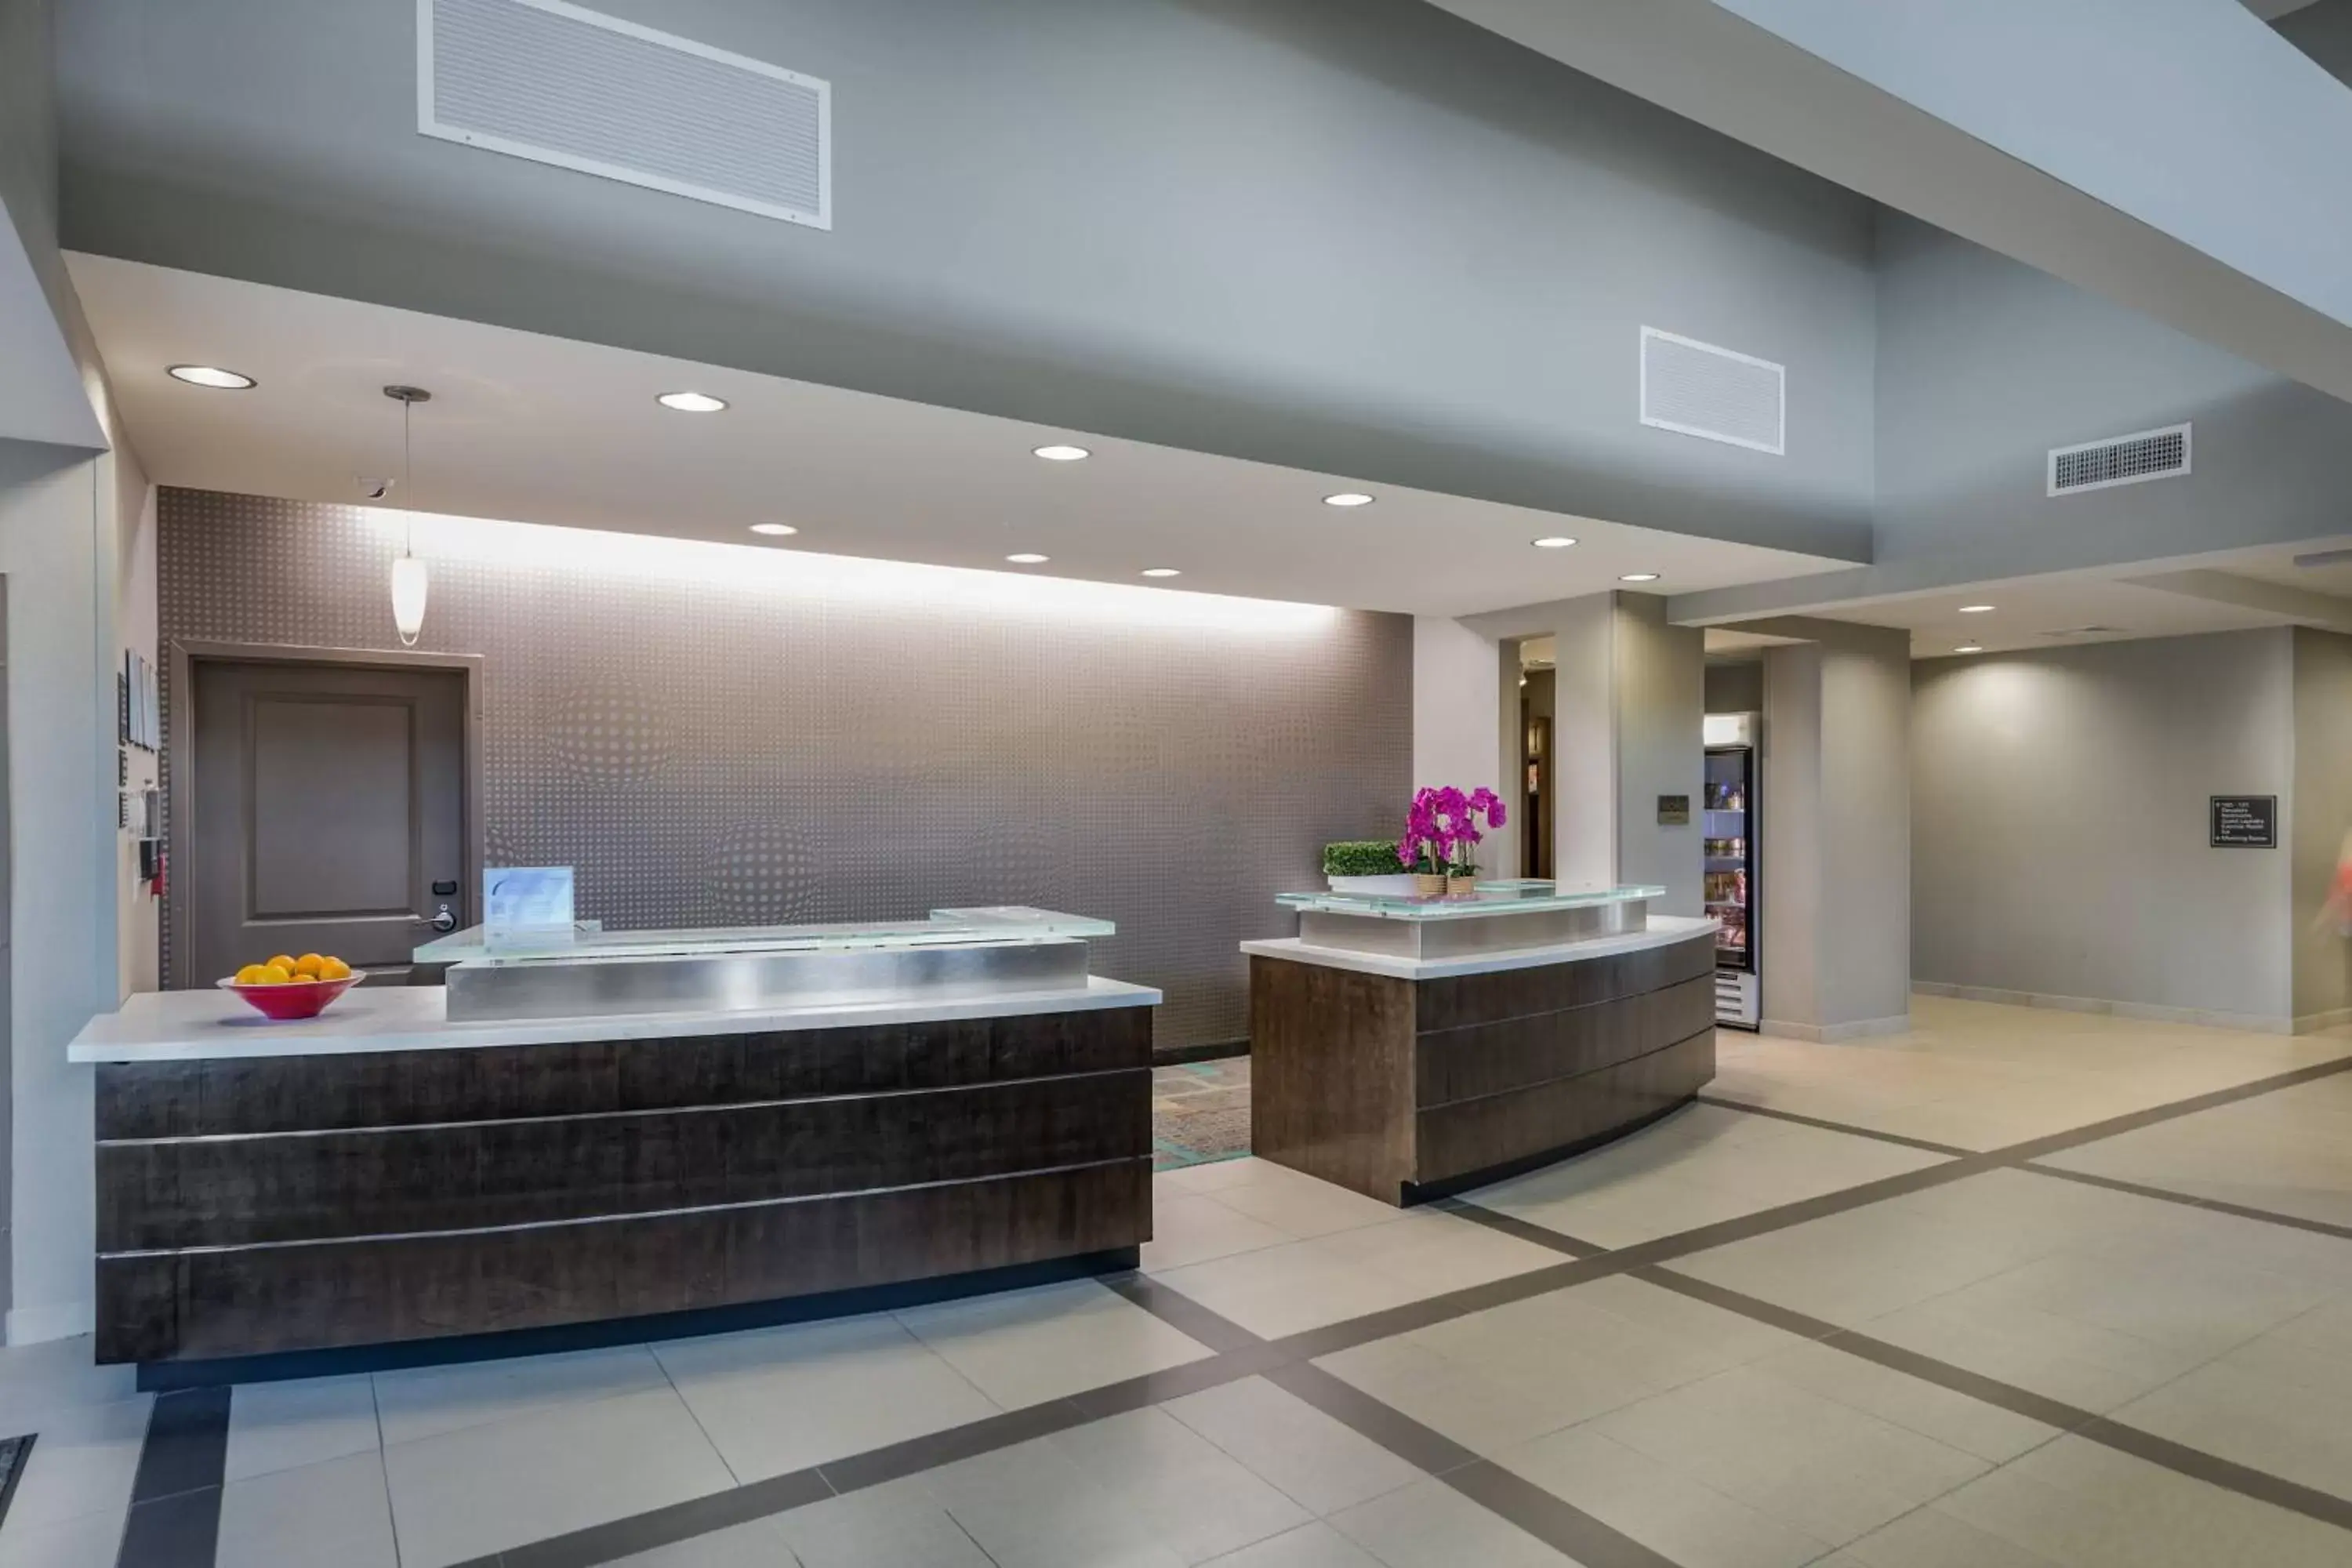 Lobby or reception, Bathroom in Residence Inn by Marriott Savannah Airport